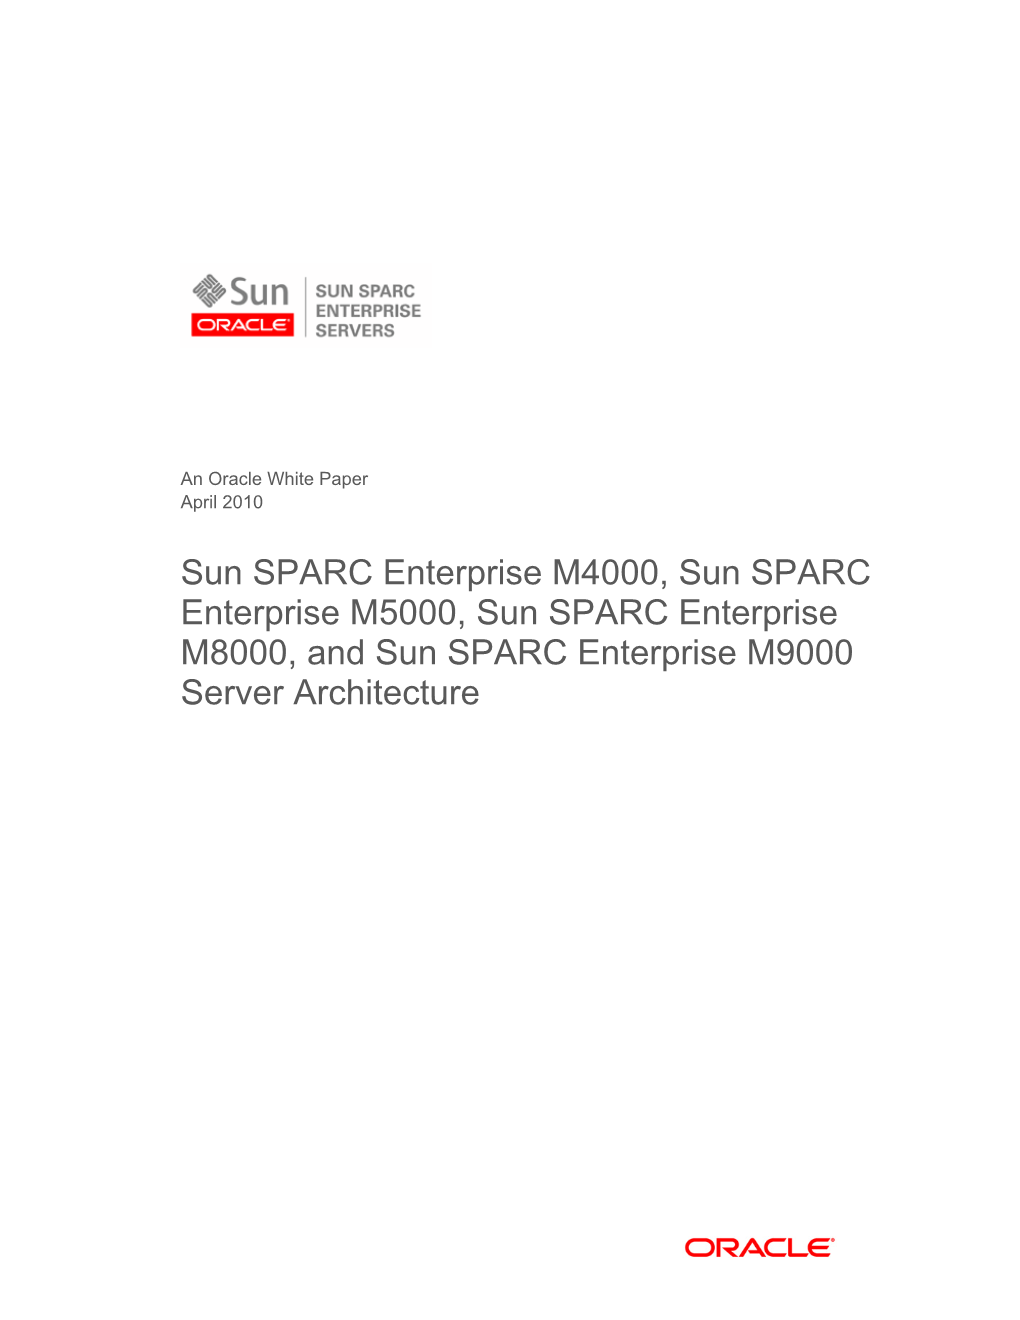 Sun SPARC Enterprise M4000, Sun SPARC Enterprise M5000, Sun SPARC Enterprise M8000, and Sun SPARC Enterprise M9000 Server Architecture